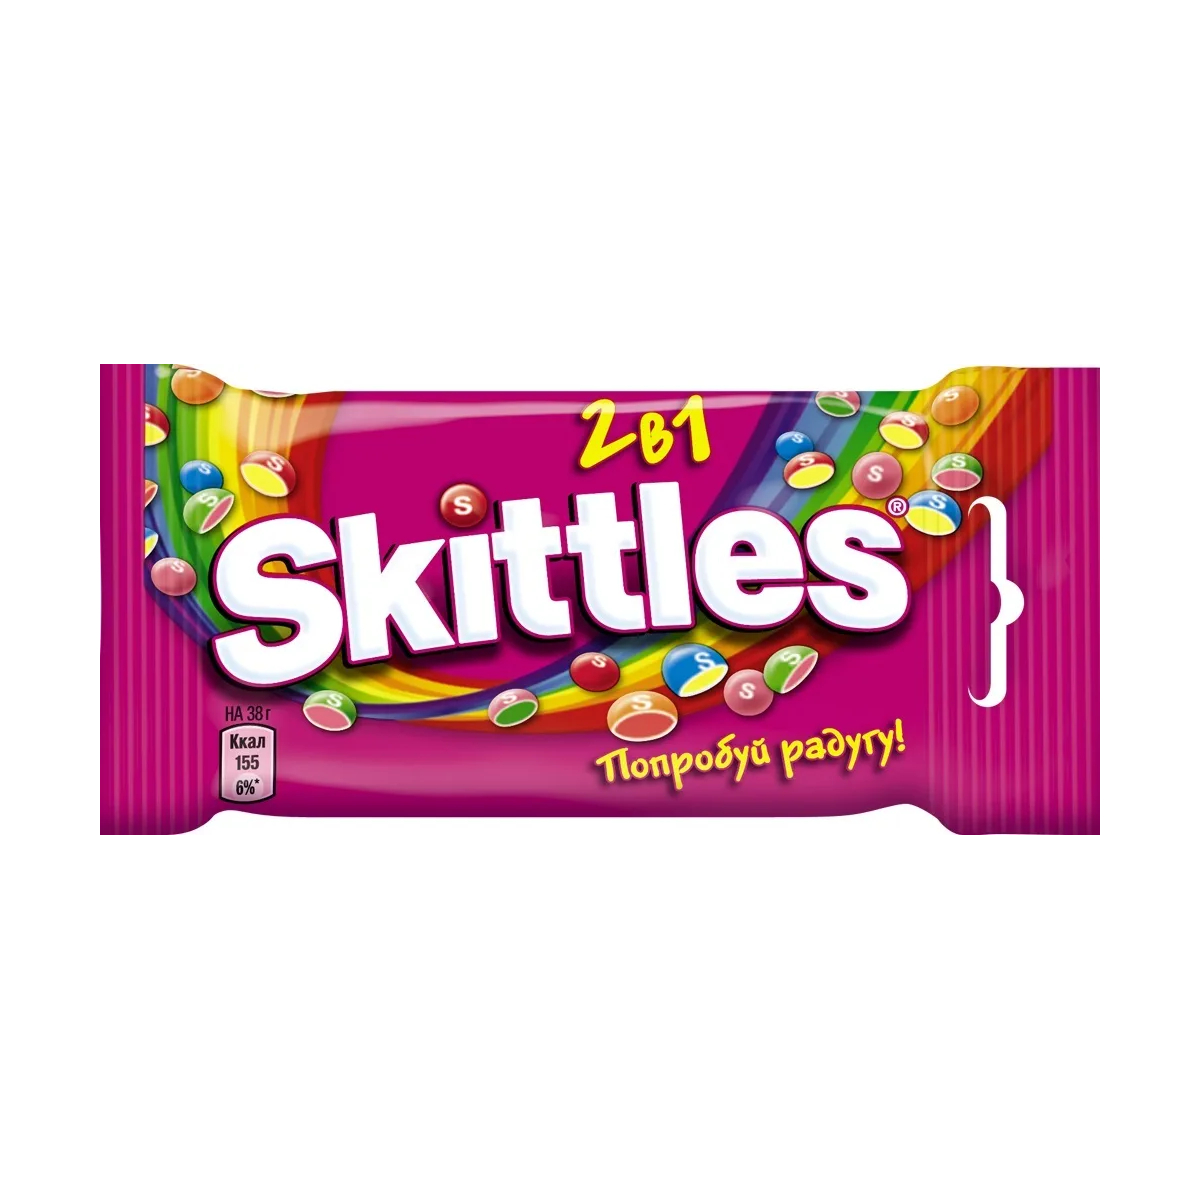 Драже Skittles 2в1, в разноцветной глазури, 38 г драже skittles фрукты в разноцветной глазури 38 г